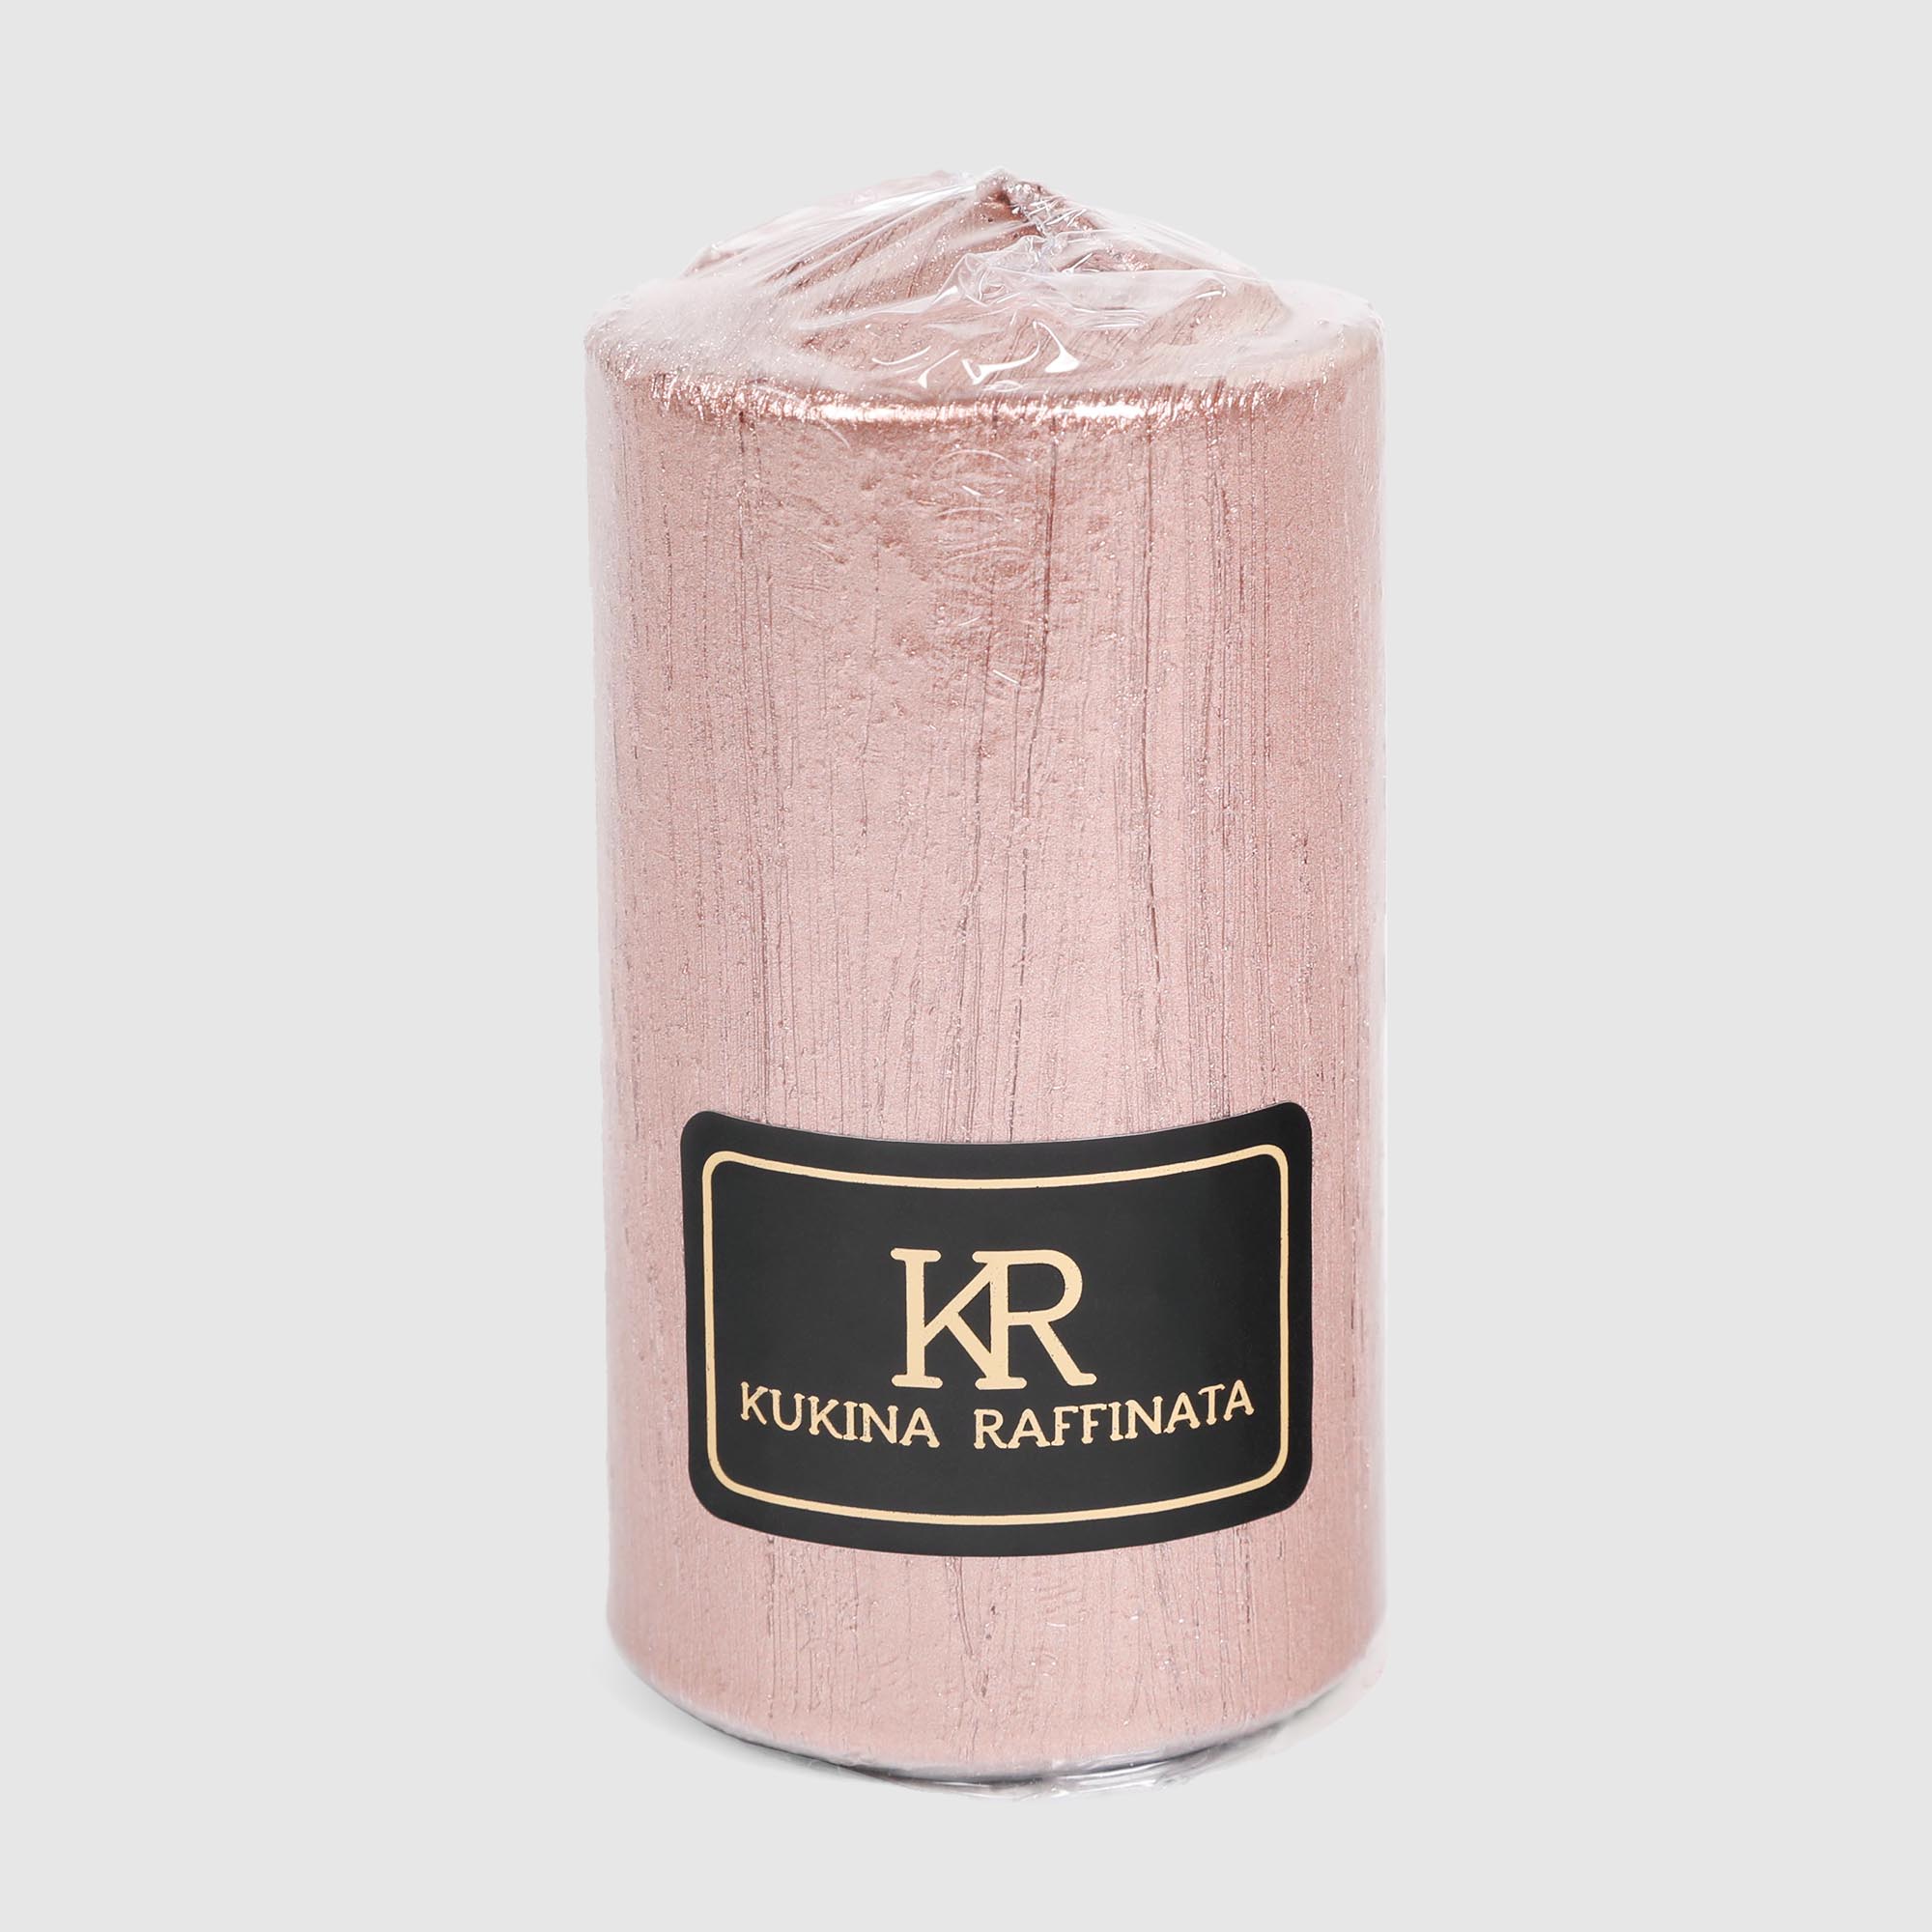 Свеча столбик Kukina Raffinata Винтаж нежно-розовая 5х10 см свеча интерьерная столбик